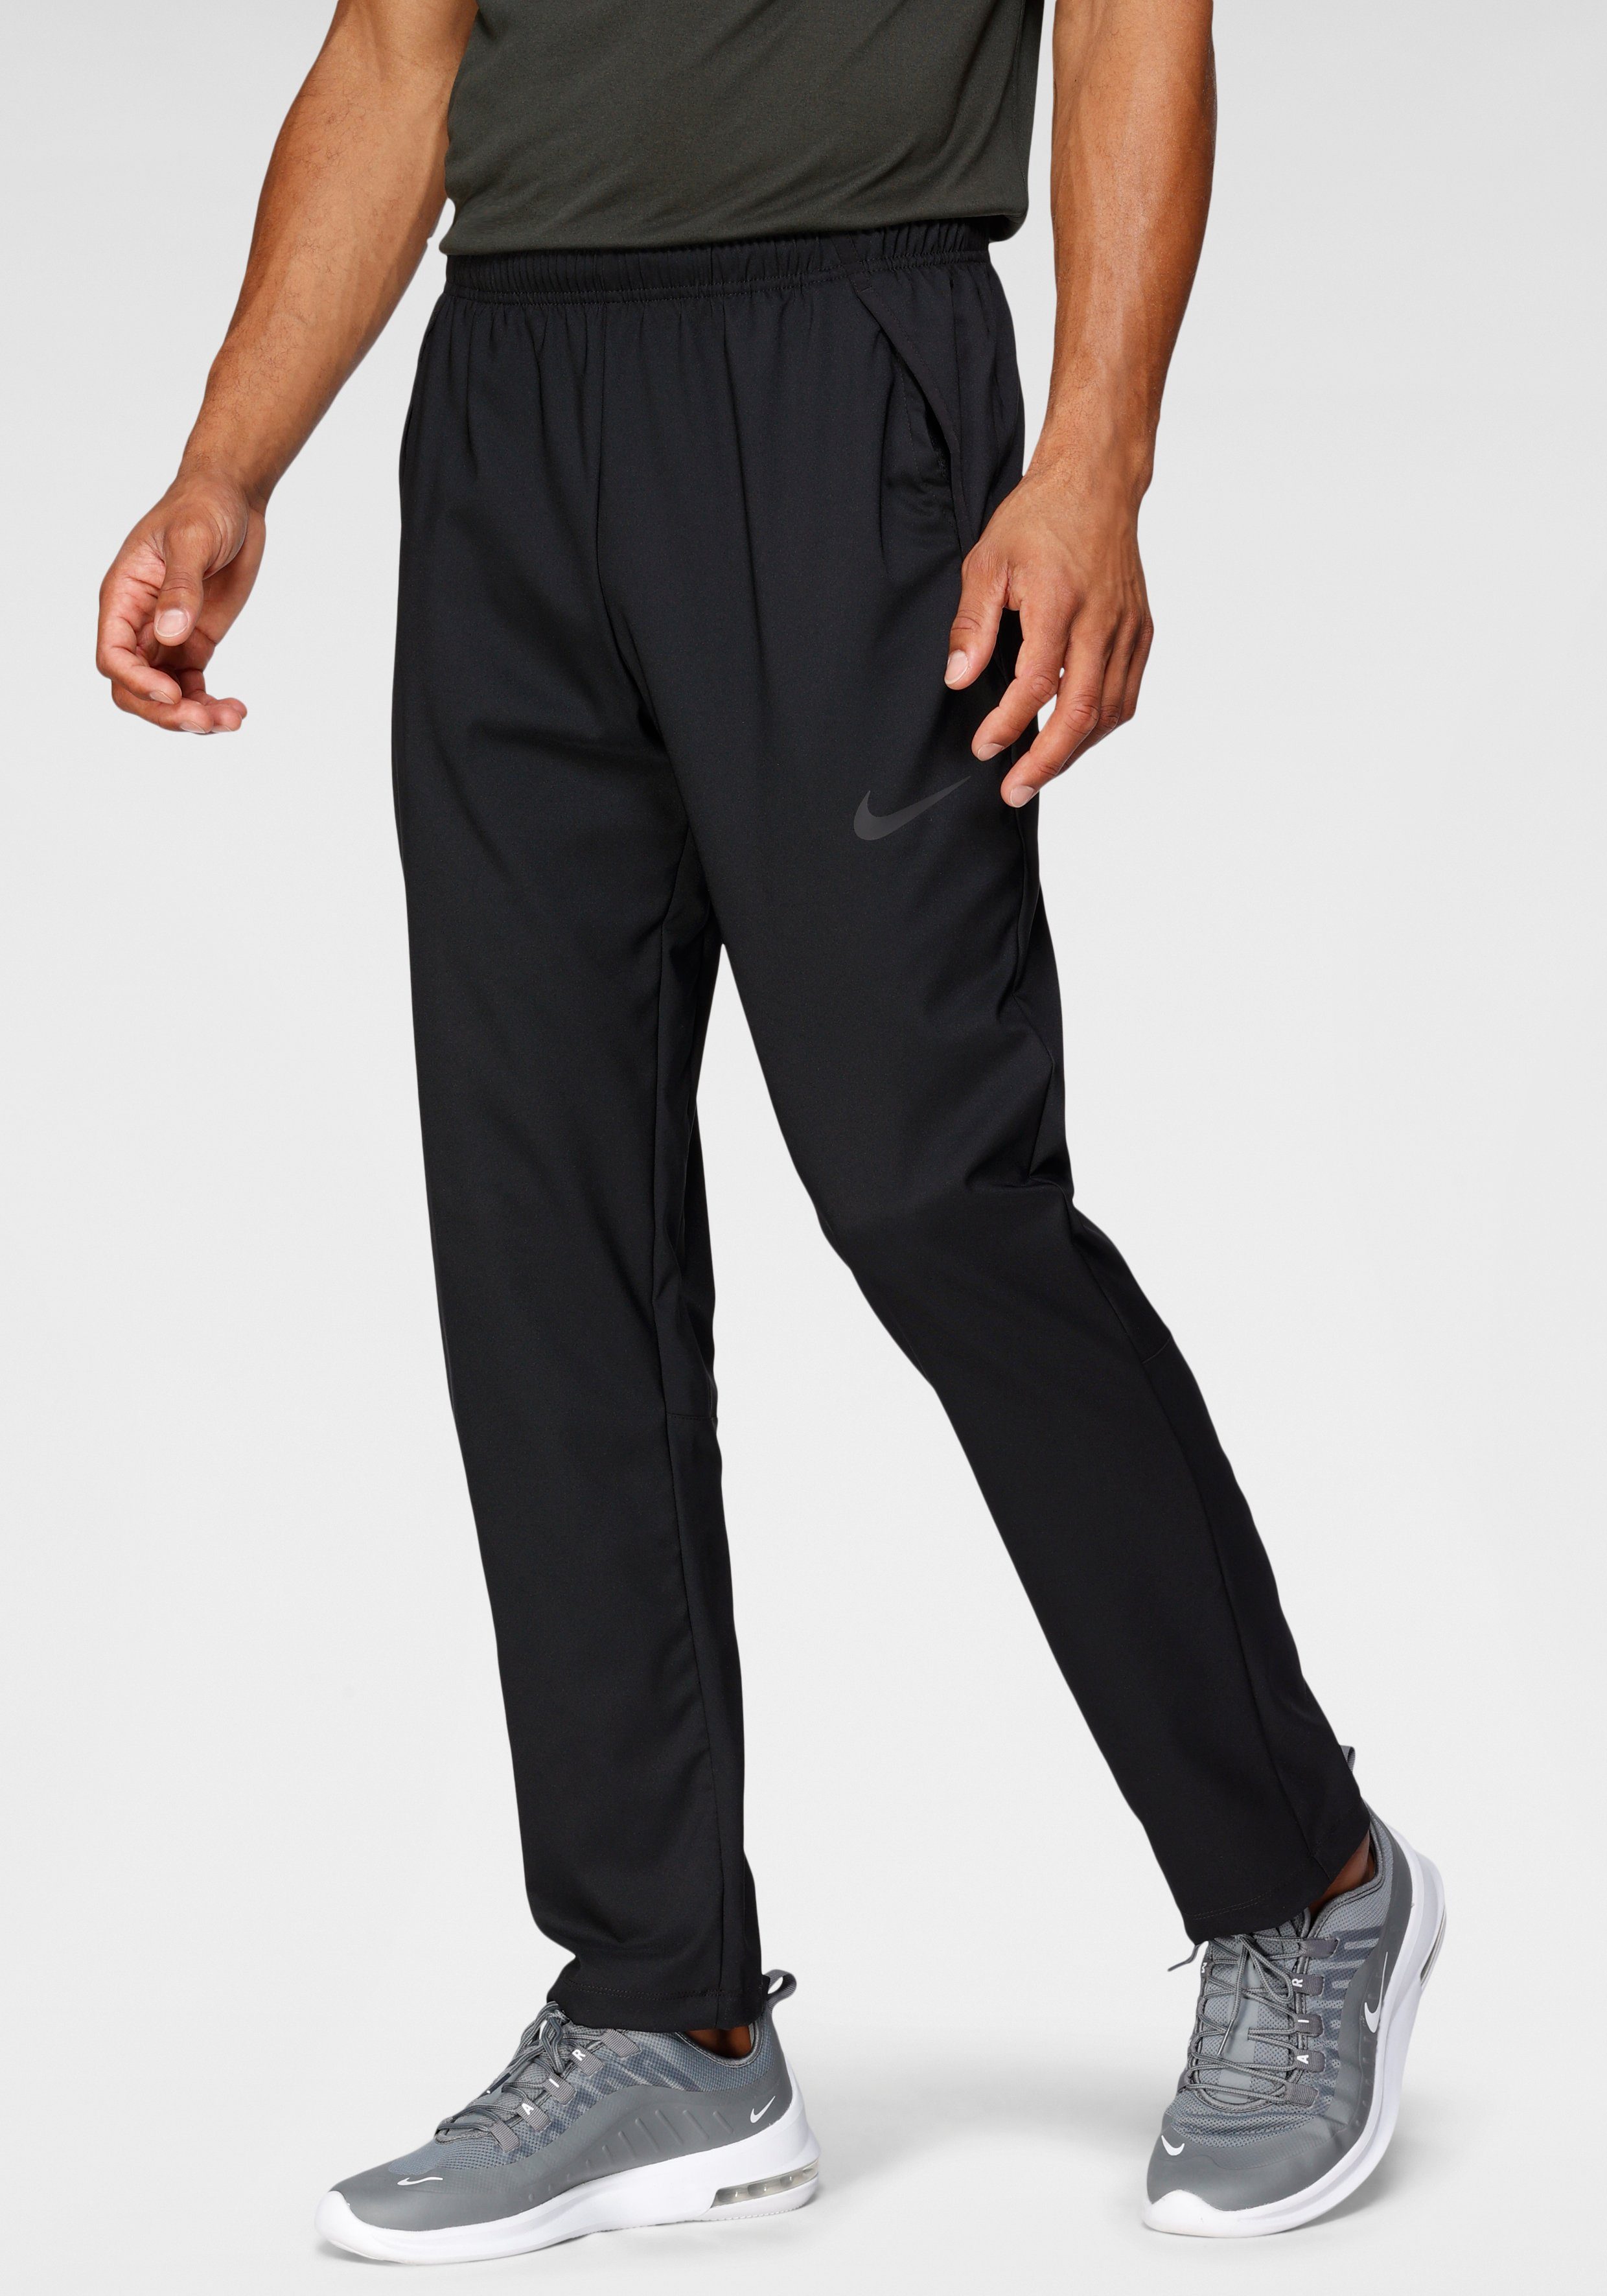 Nike Trainingshose »Dry Pant Team Woven Men's Woven Training Pants«